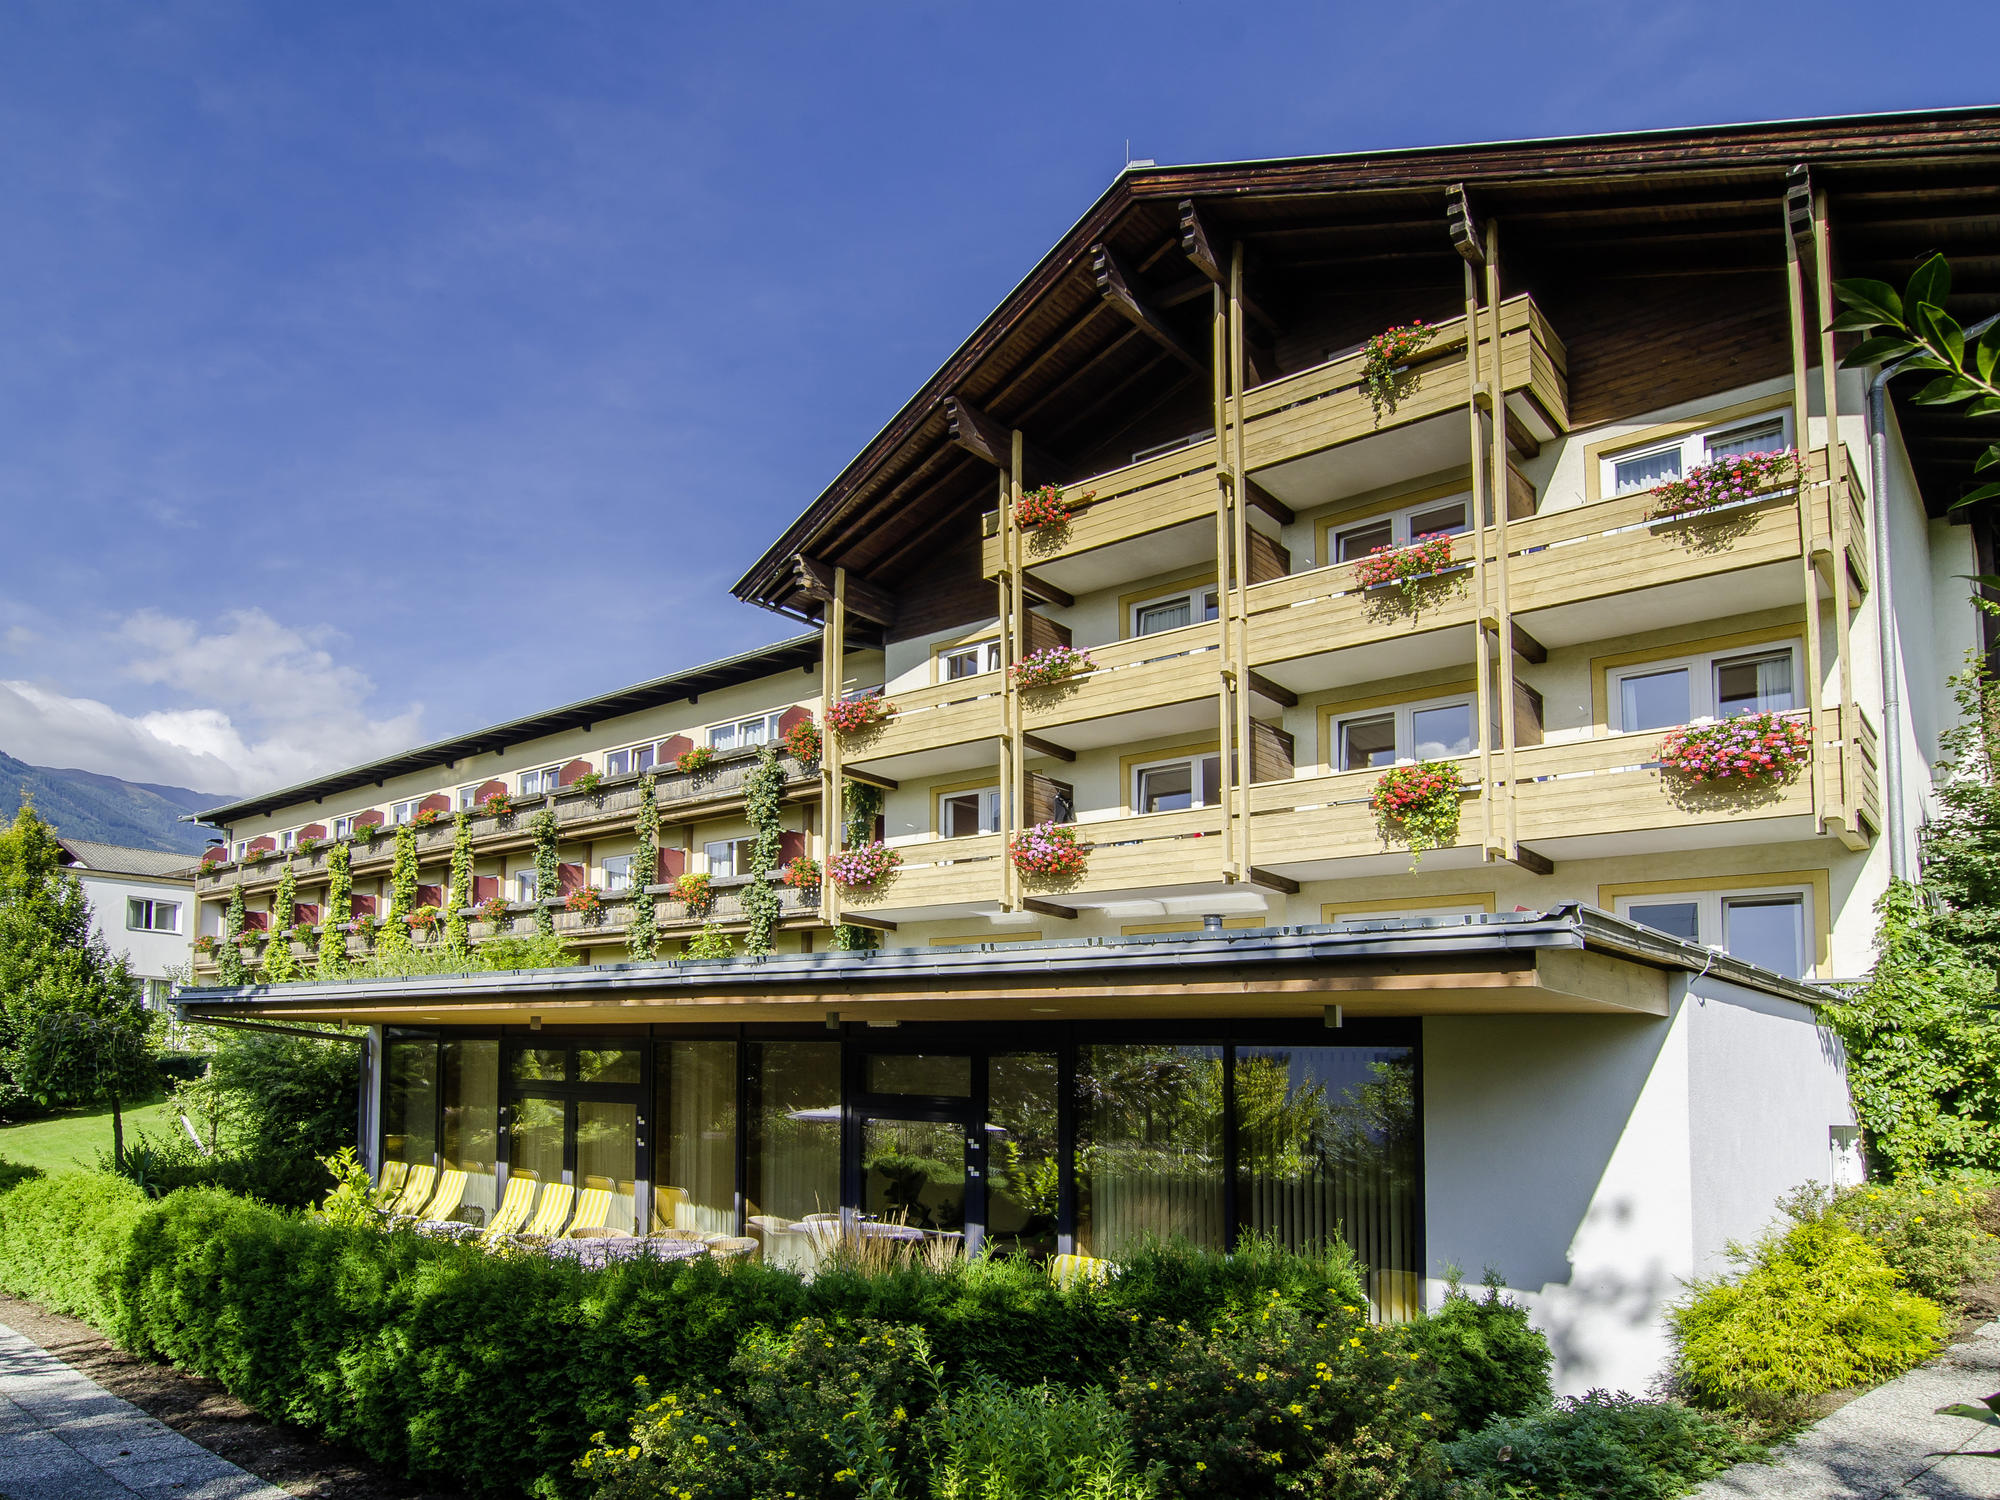 Hotel Moarhof in Lienz